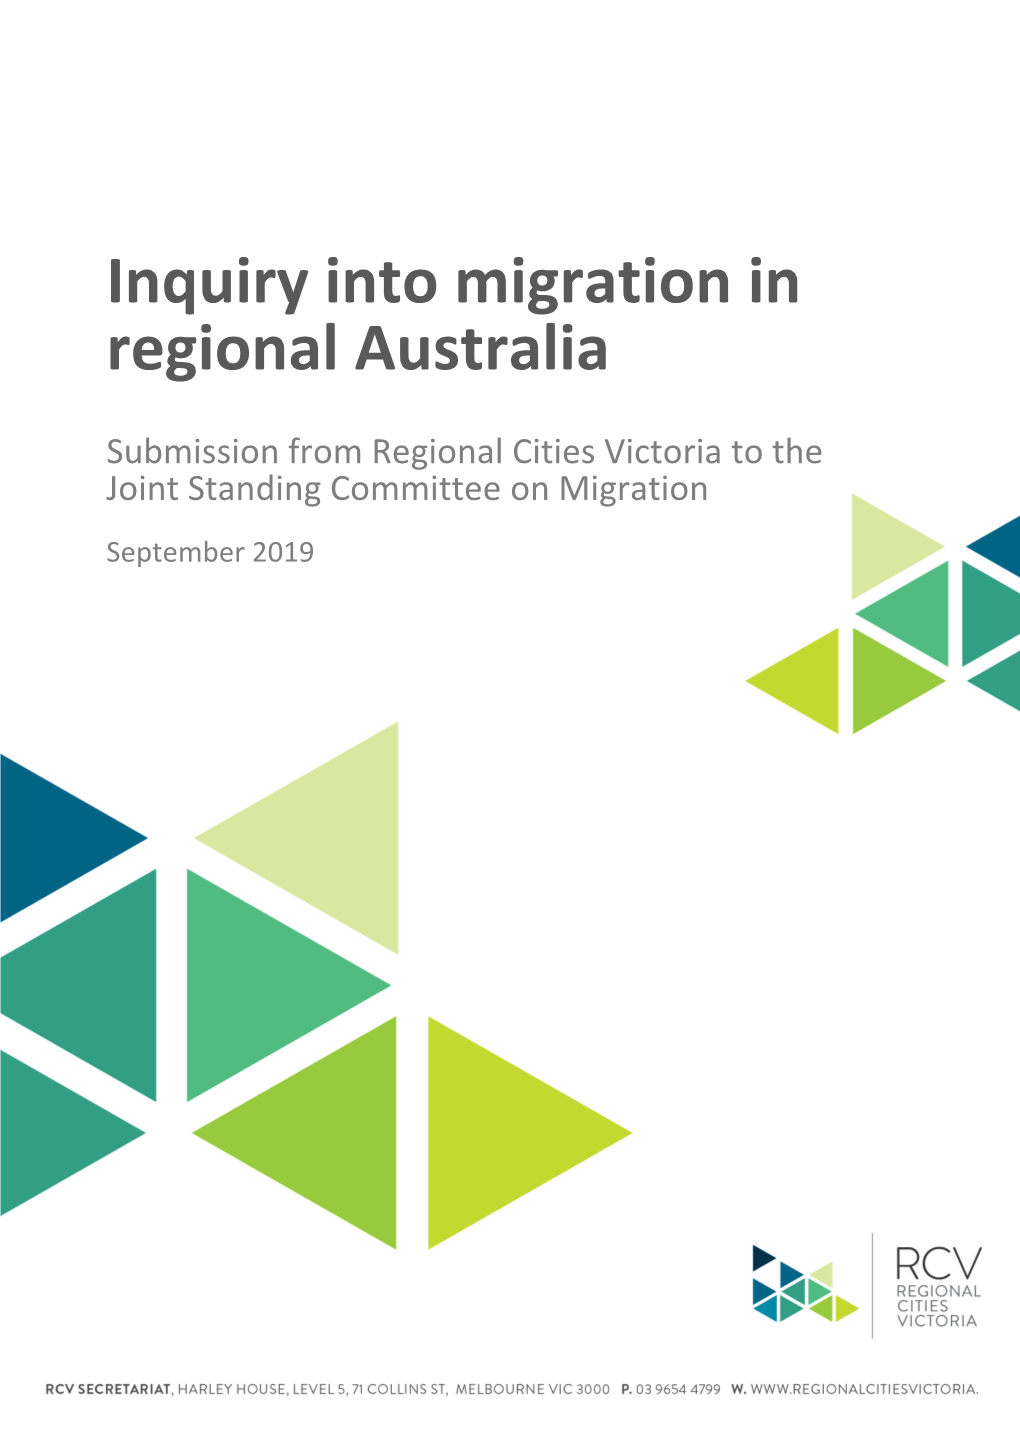 Inquiry Into Migration in Regional Australia